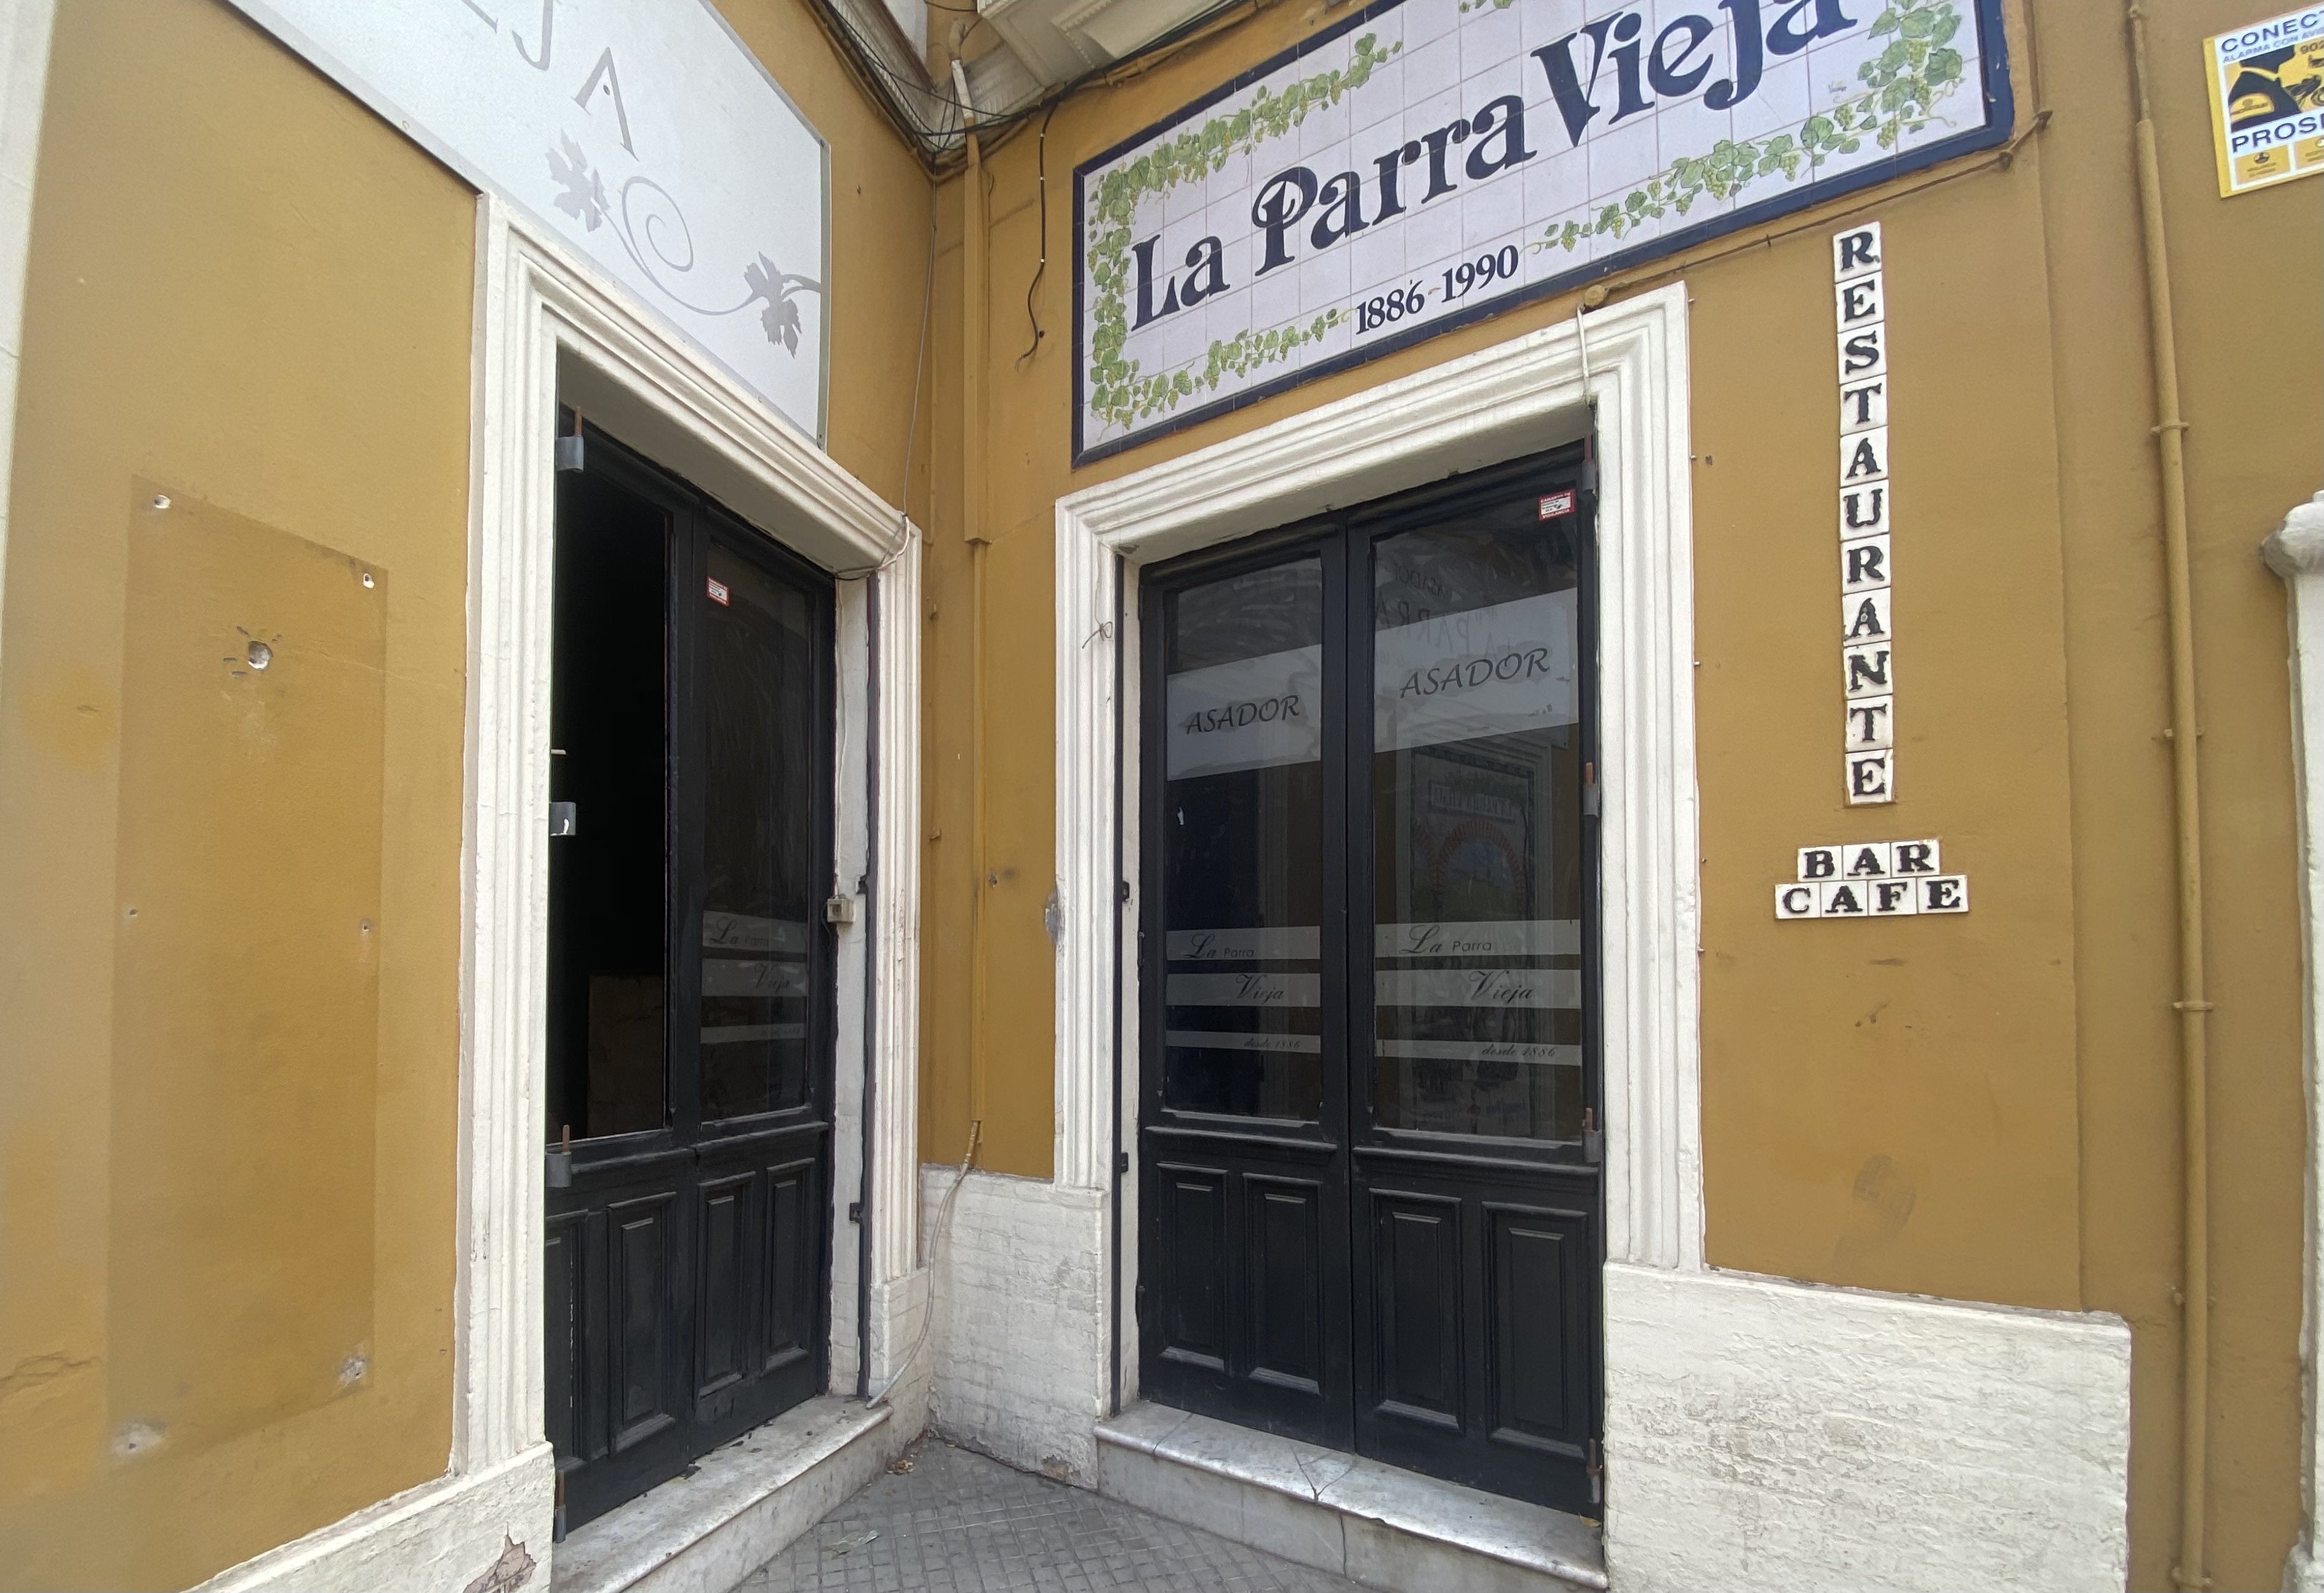 Aspecto del acceso principal de La Parra Vieja, en el centro de Jerez, violentado.